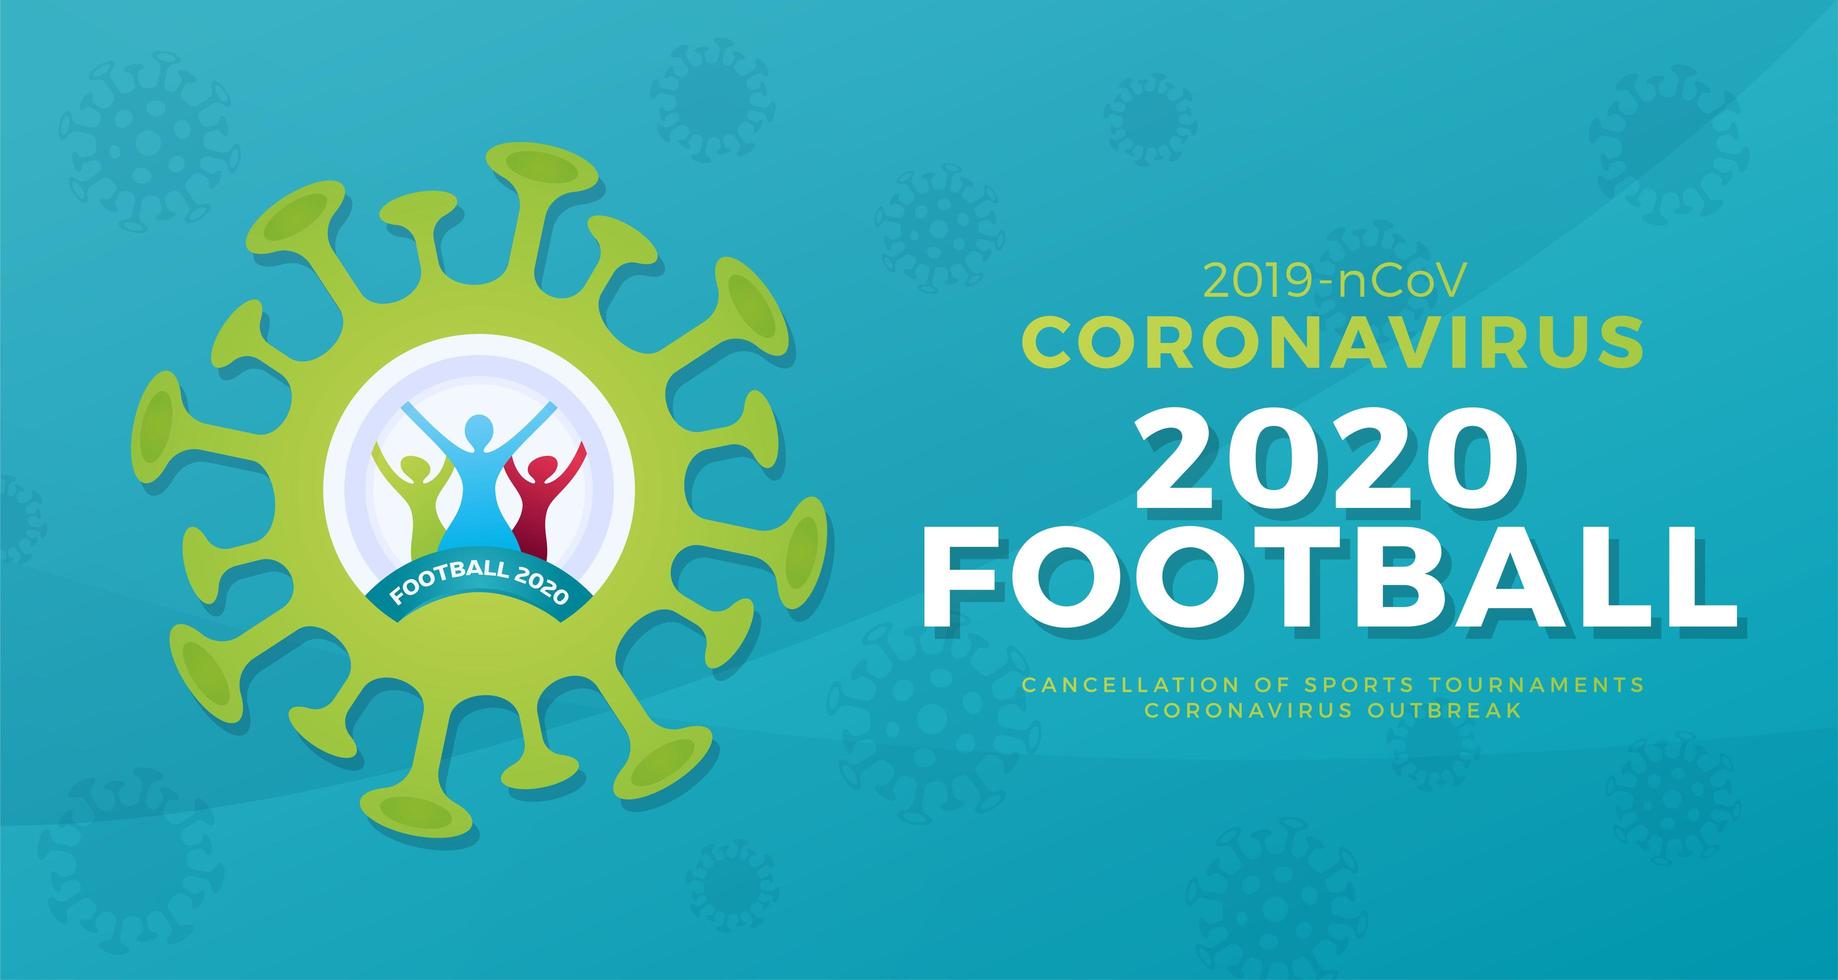 2020 fotboll vektor banner försiktighet coronavirus. stoppa 2019-ncov-utbrottet. koronavirus fara och folkhälsorisk sjukdom och influensautbrott. avbokning av sportevenemang och matchkoncept